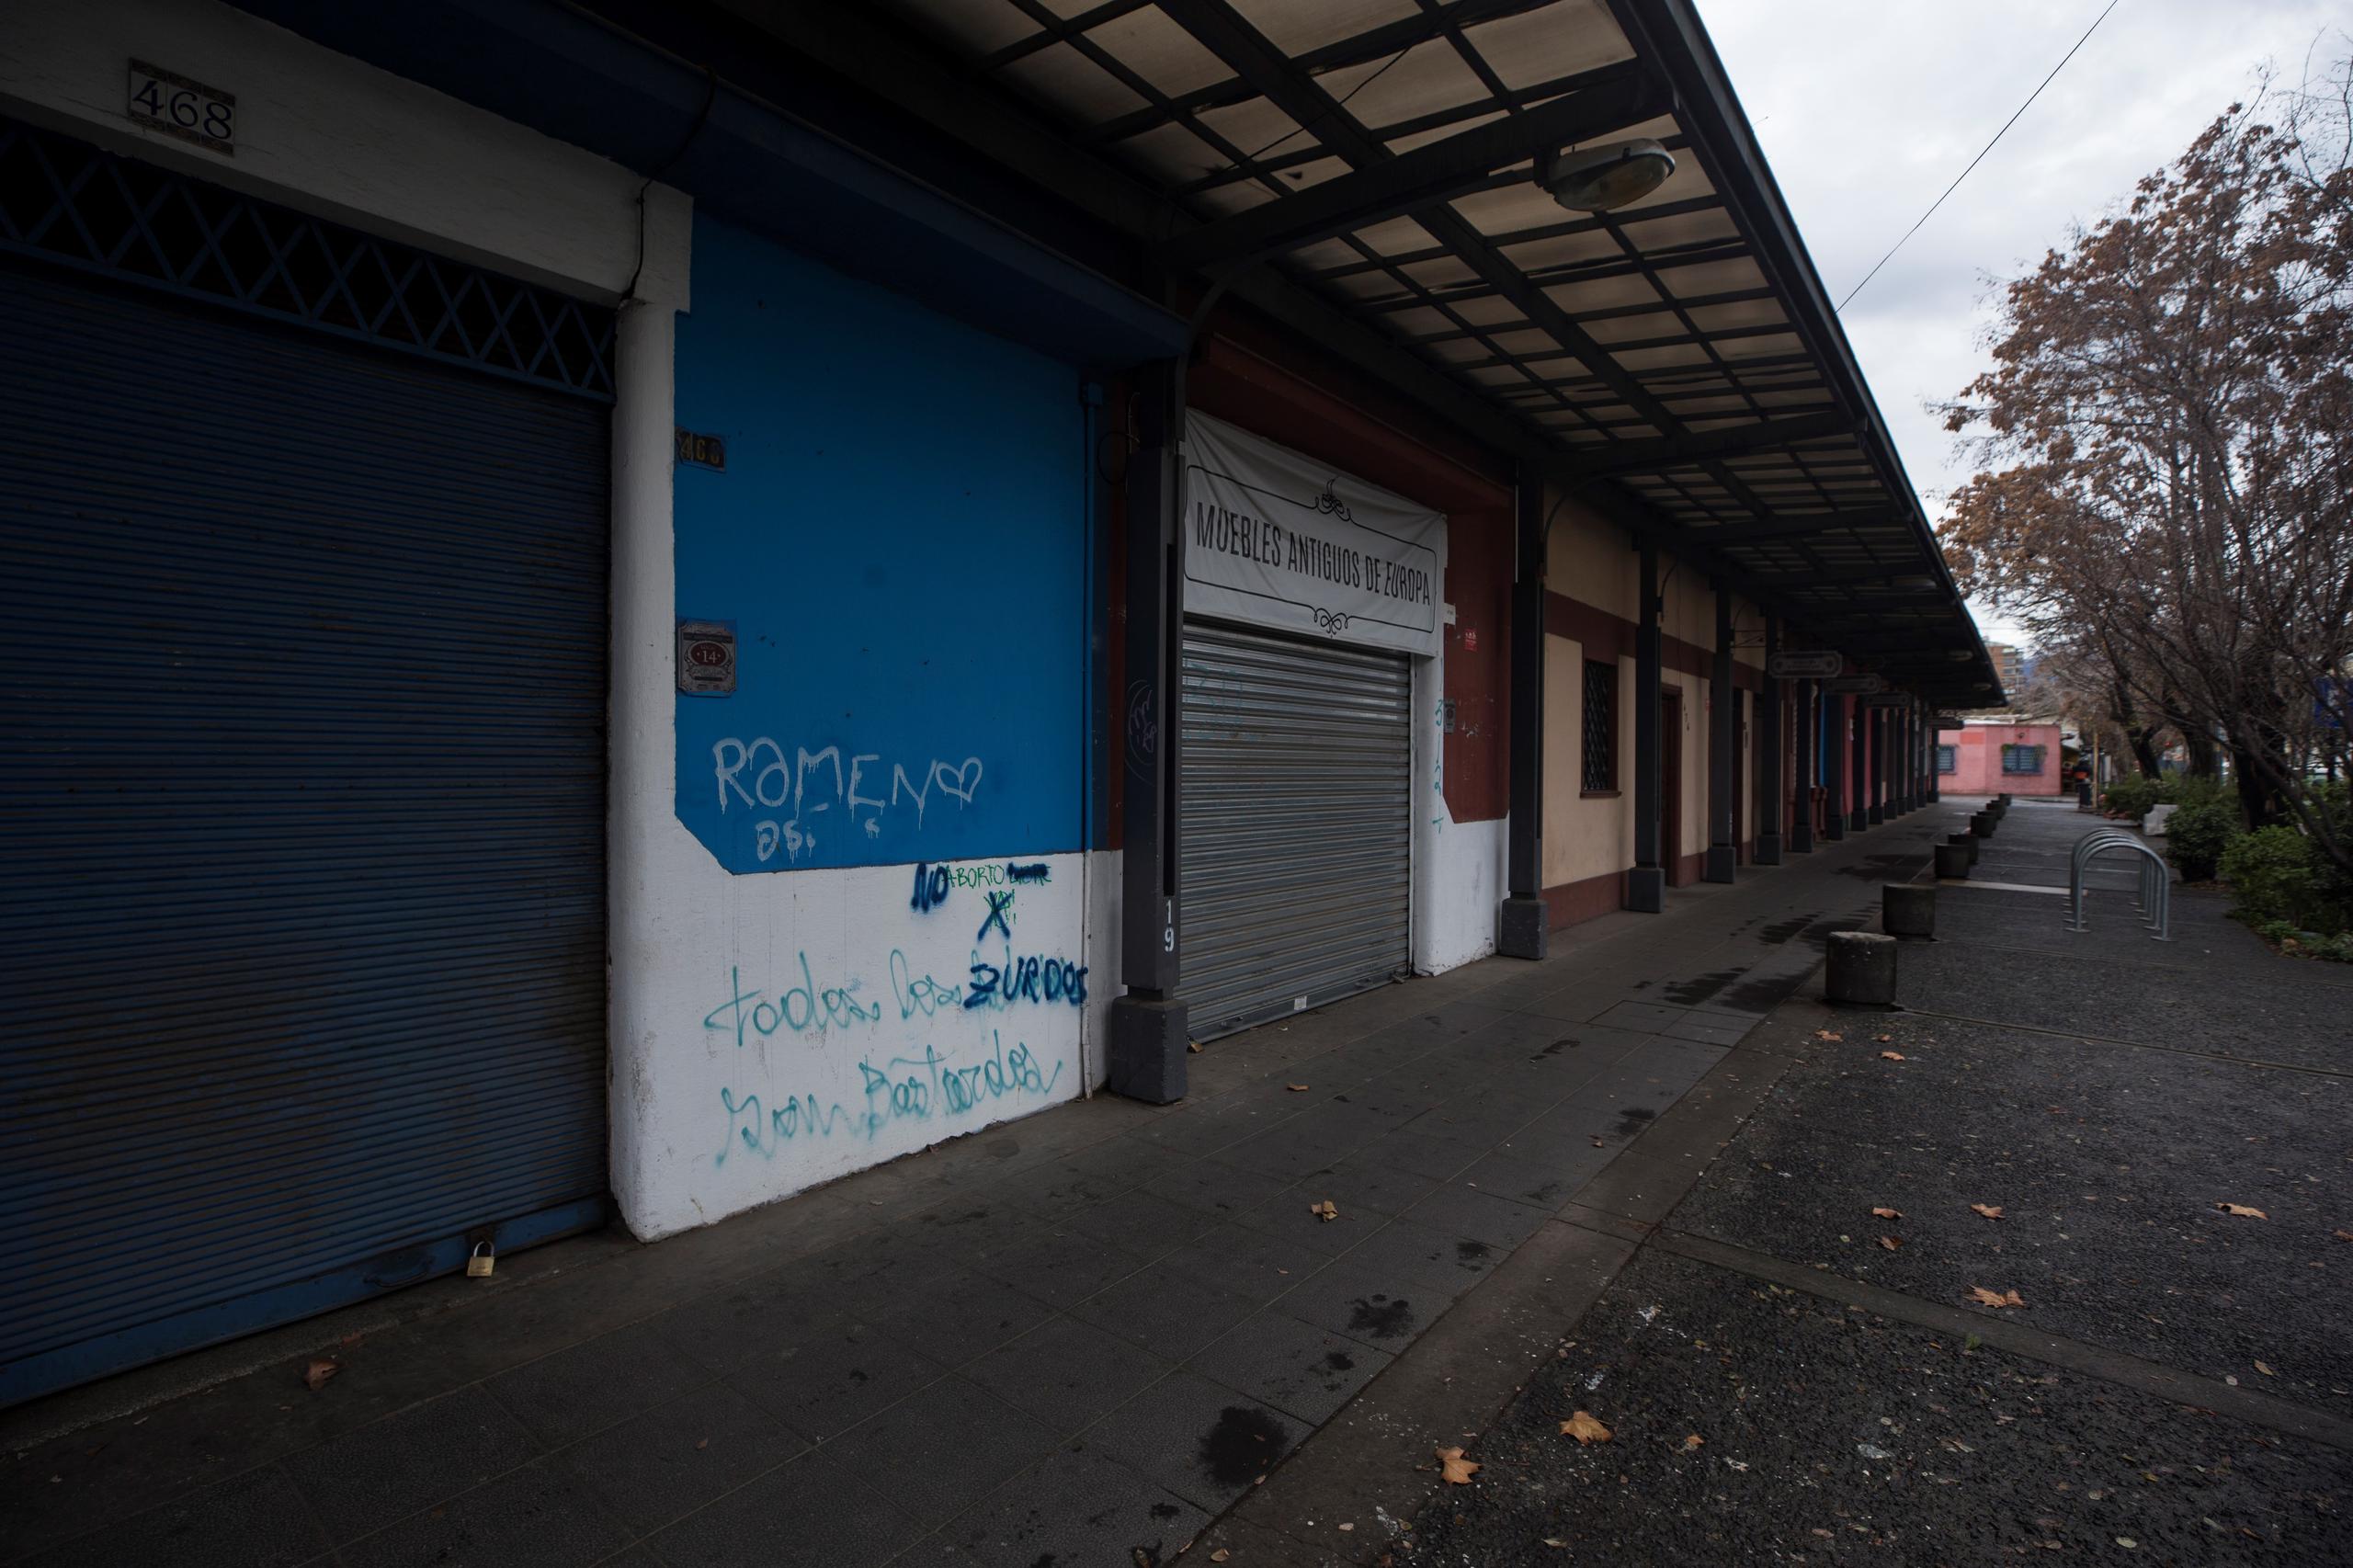 Vista de una calle de locales de artesanía cerrados debido a la pandemia de COVID-19, este miércoles en el barrio Italia de Santiago (Chile), un importante sector turístico y de ocio cerca del centro de la capital chilena.